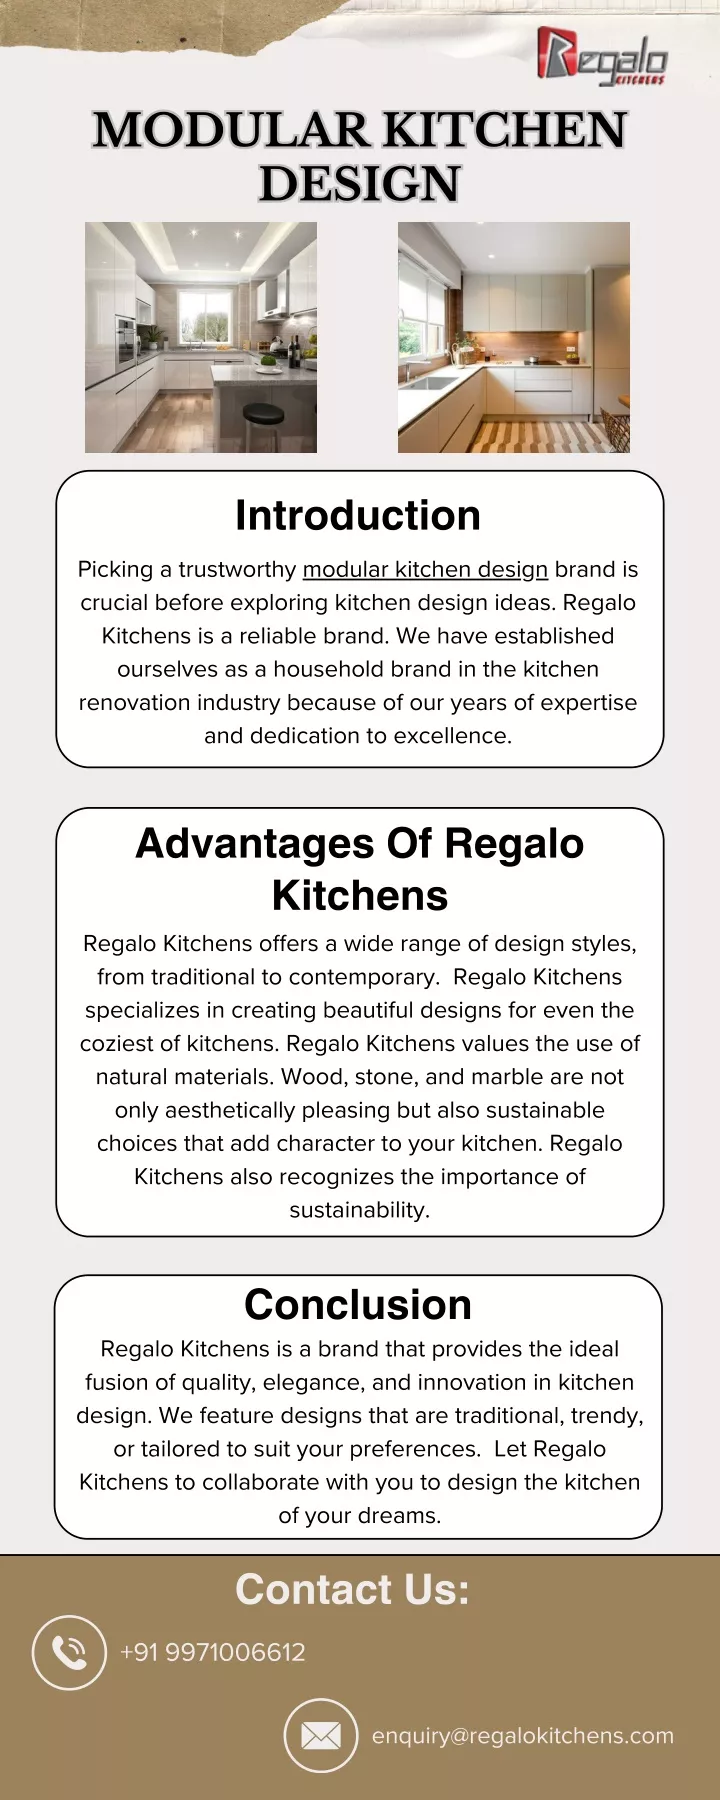 modular kitchen design design